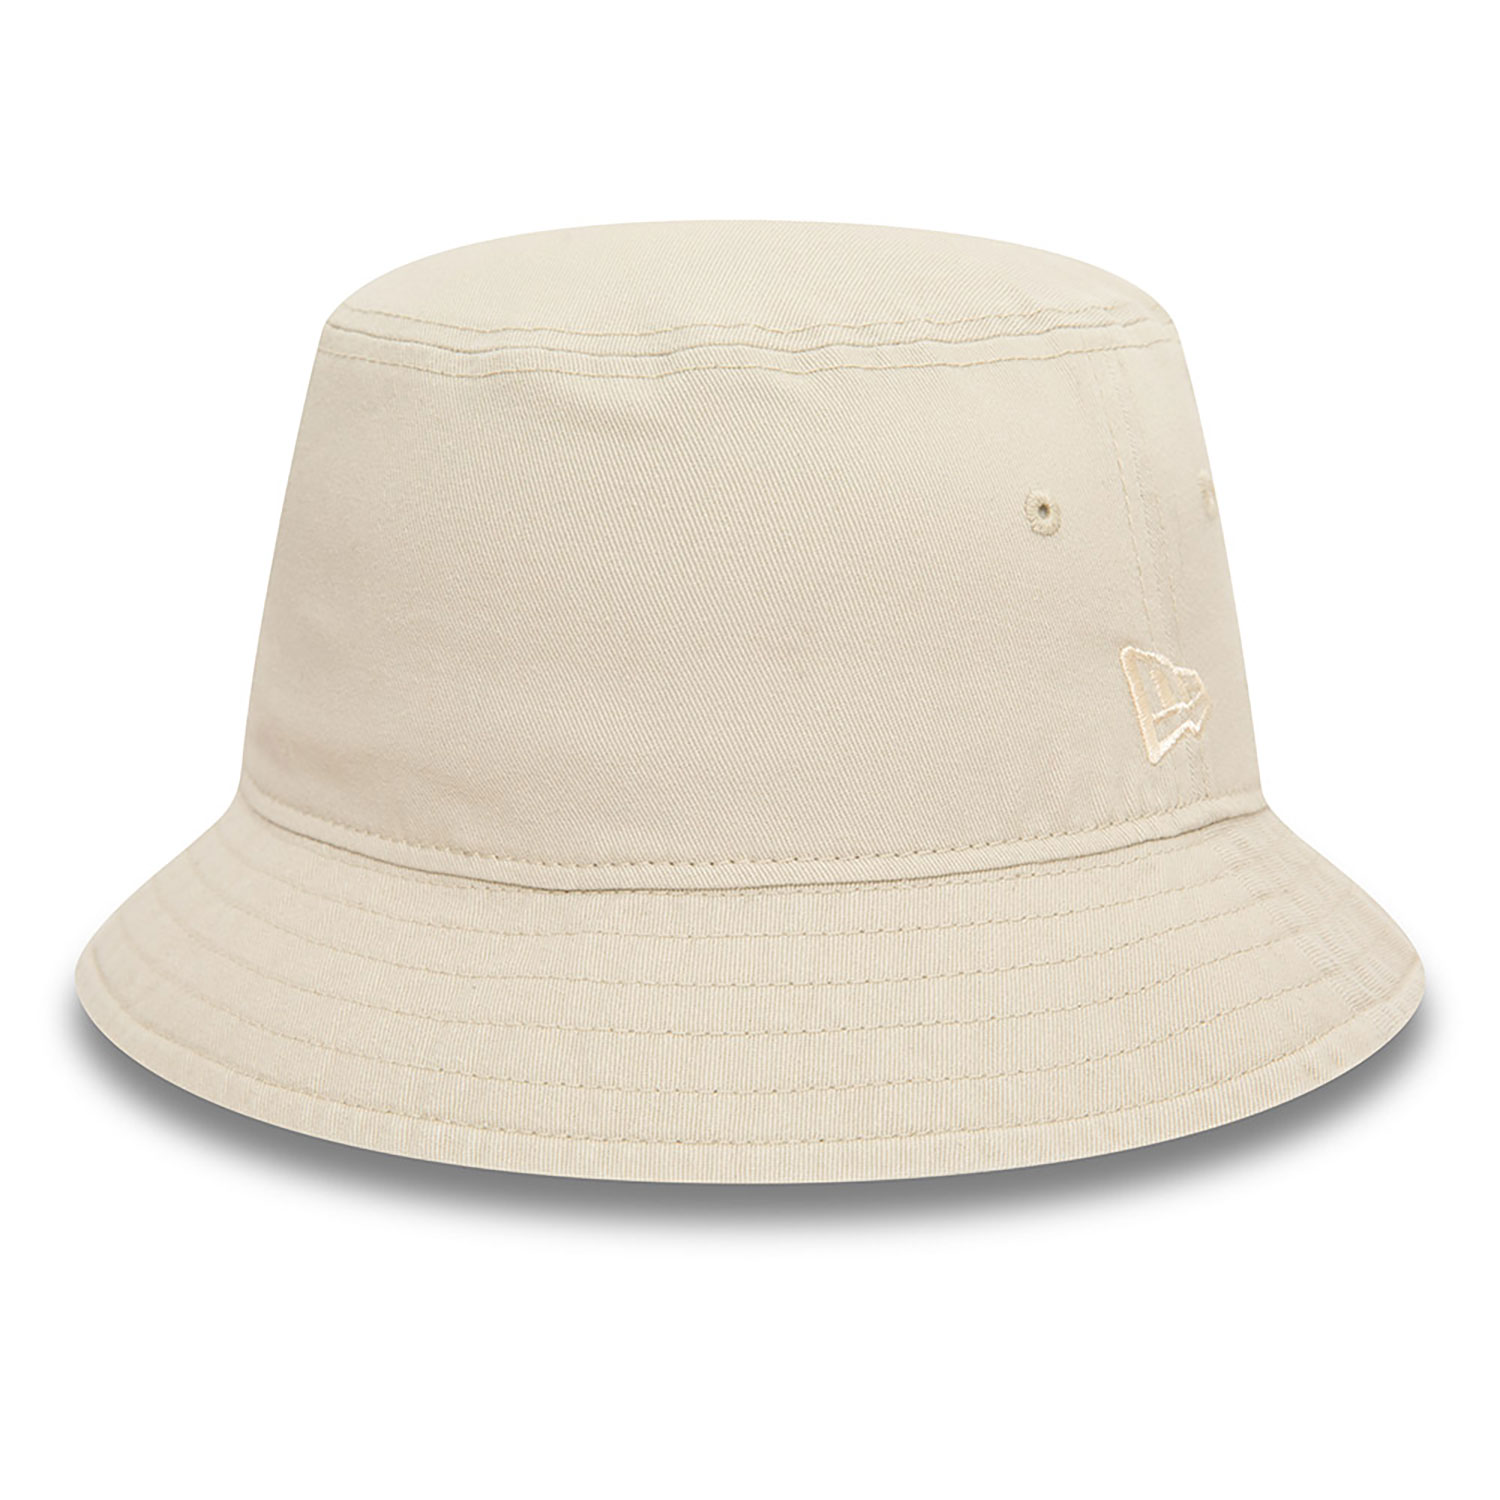 New Era Essential Brown Bucket Hat